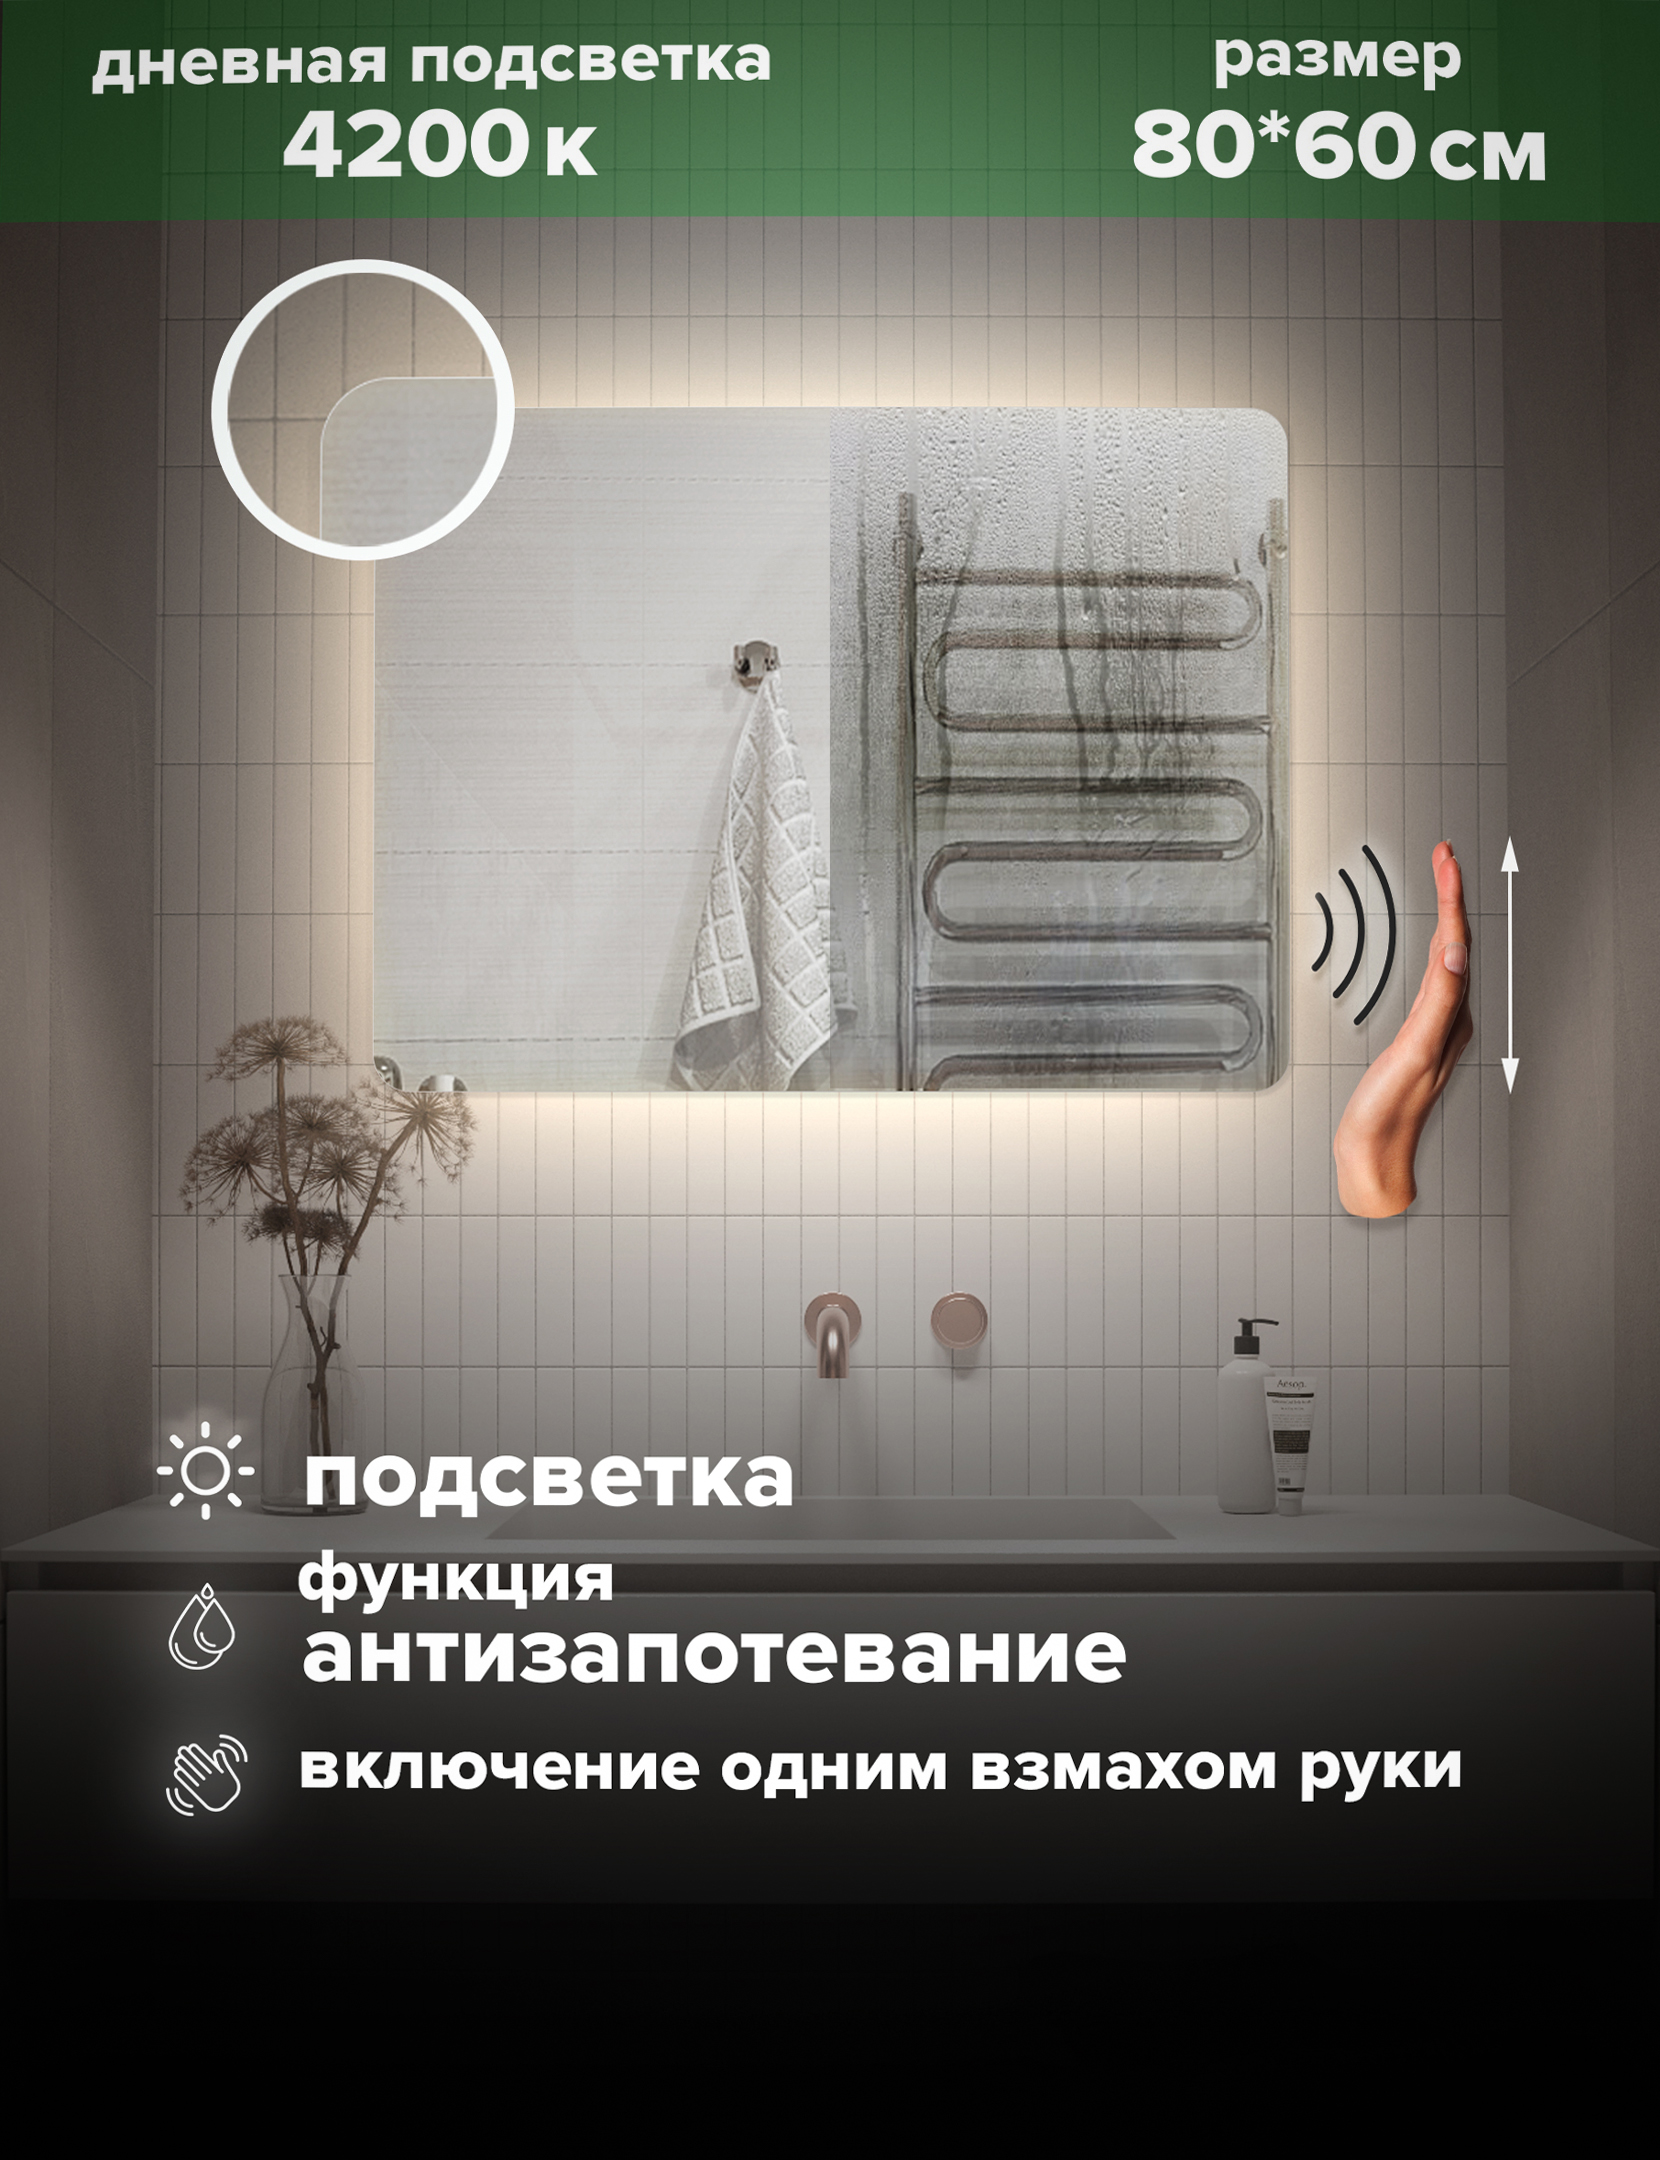 Зеркало для ванной Alfa Mirrors дневная подсветка 4200К прямоугольное 80*60 см, MOl-86AVzd